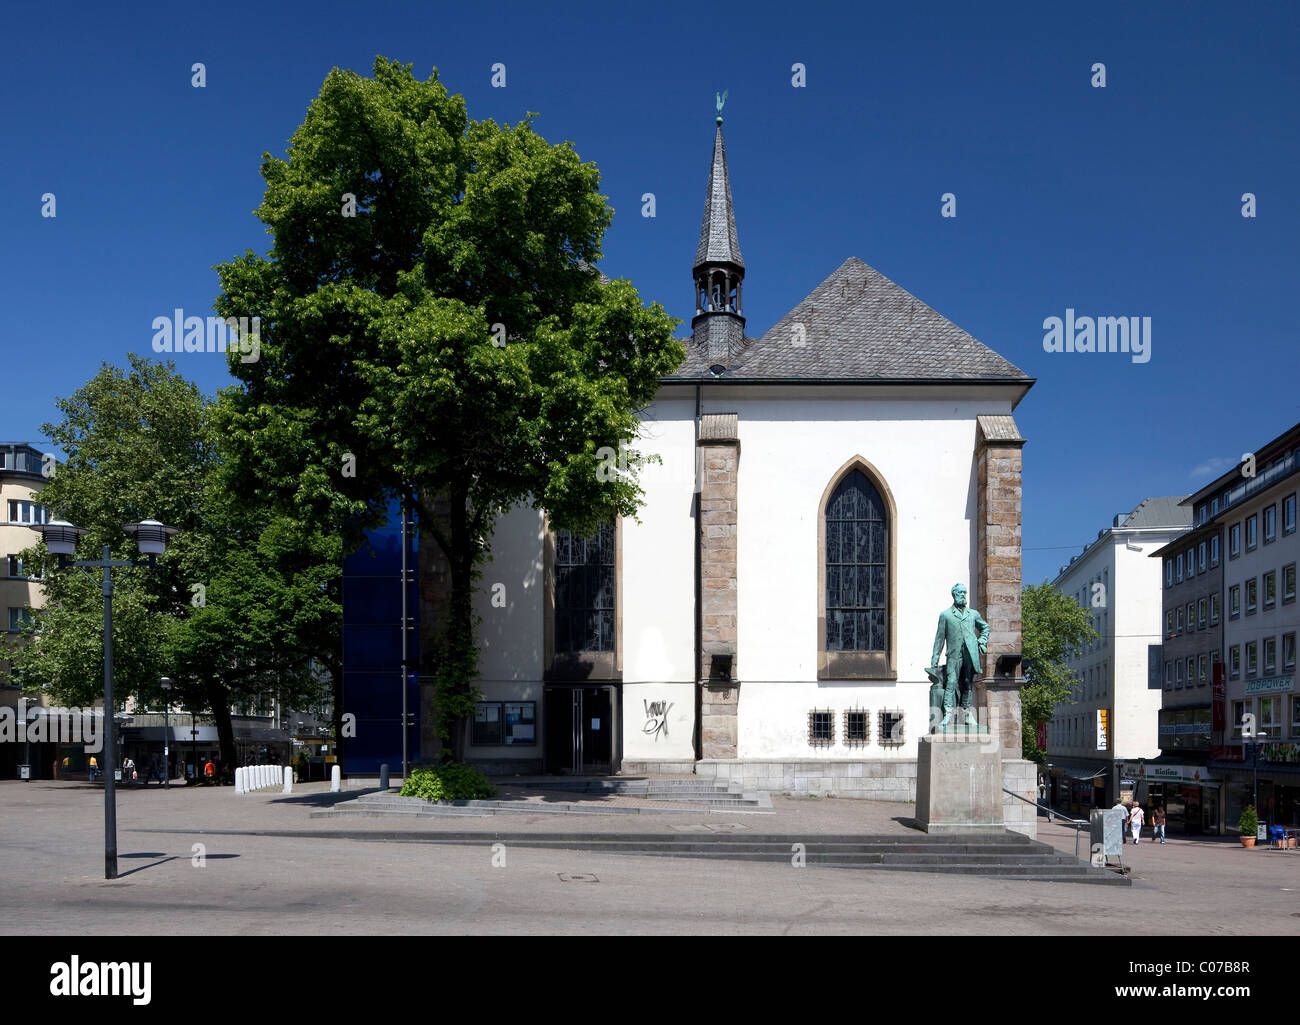 L'église Marktkirche, Essen, région de la Ruhr, Nordrhein-Westfalen, Germany, Europe Banque D'Images